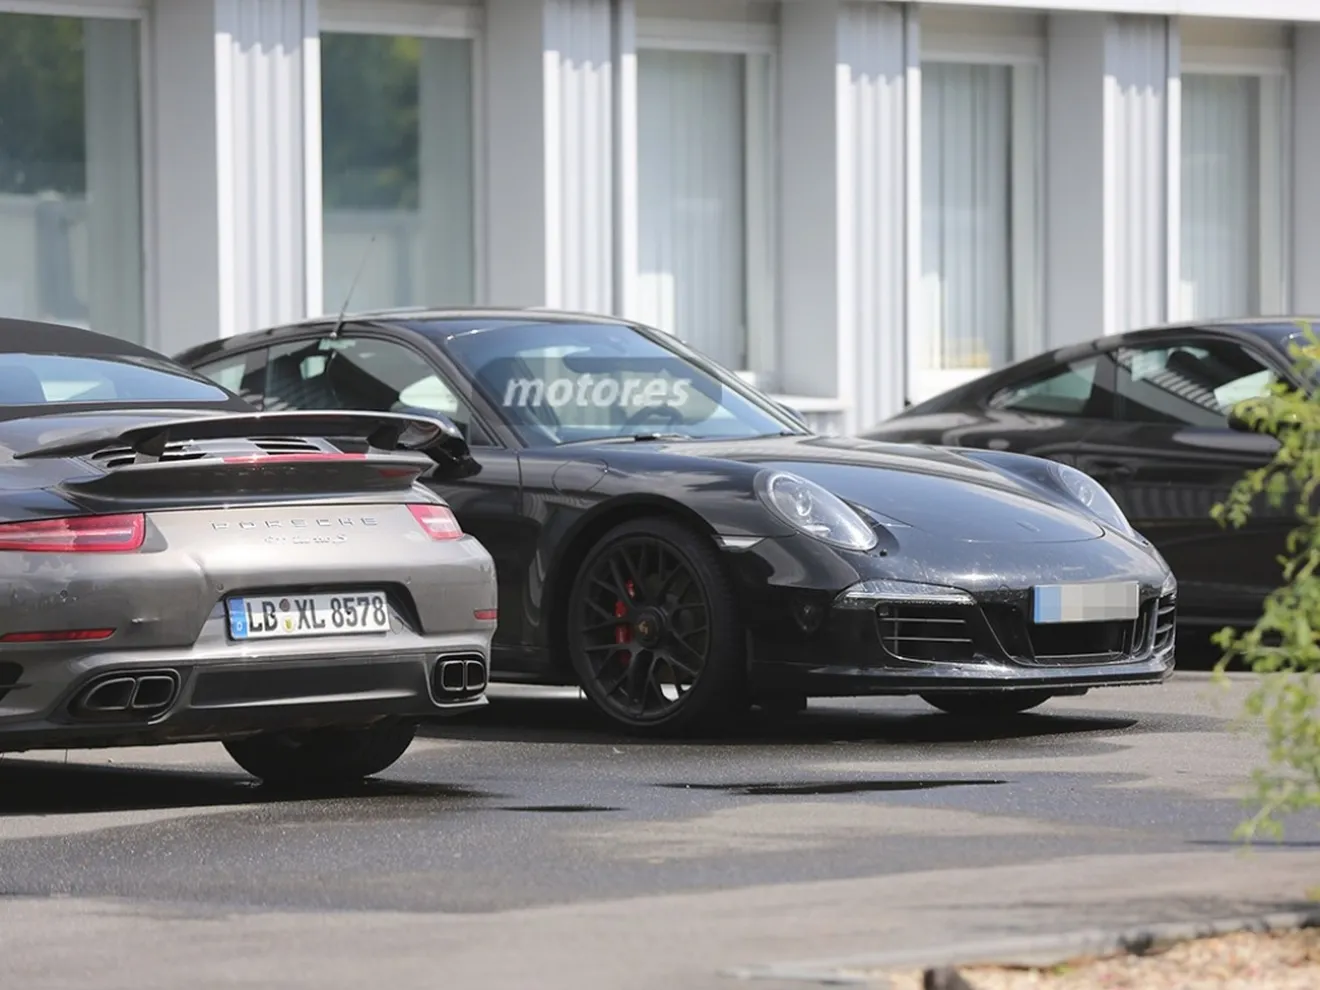 Porsche 911 2015, primeras imágenes del frontal al descubierto